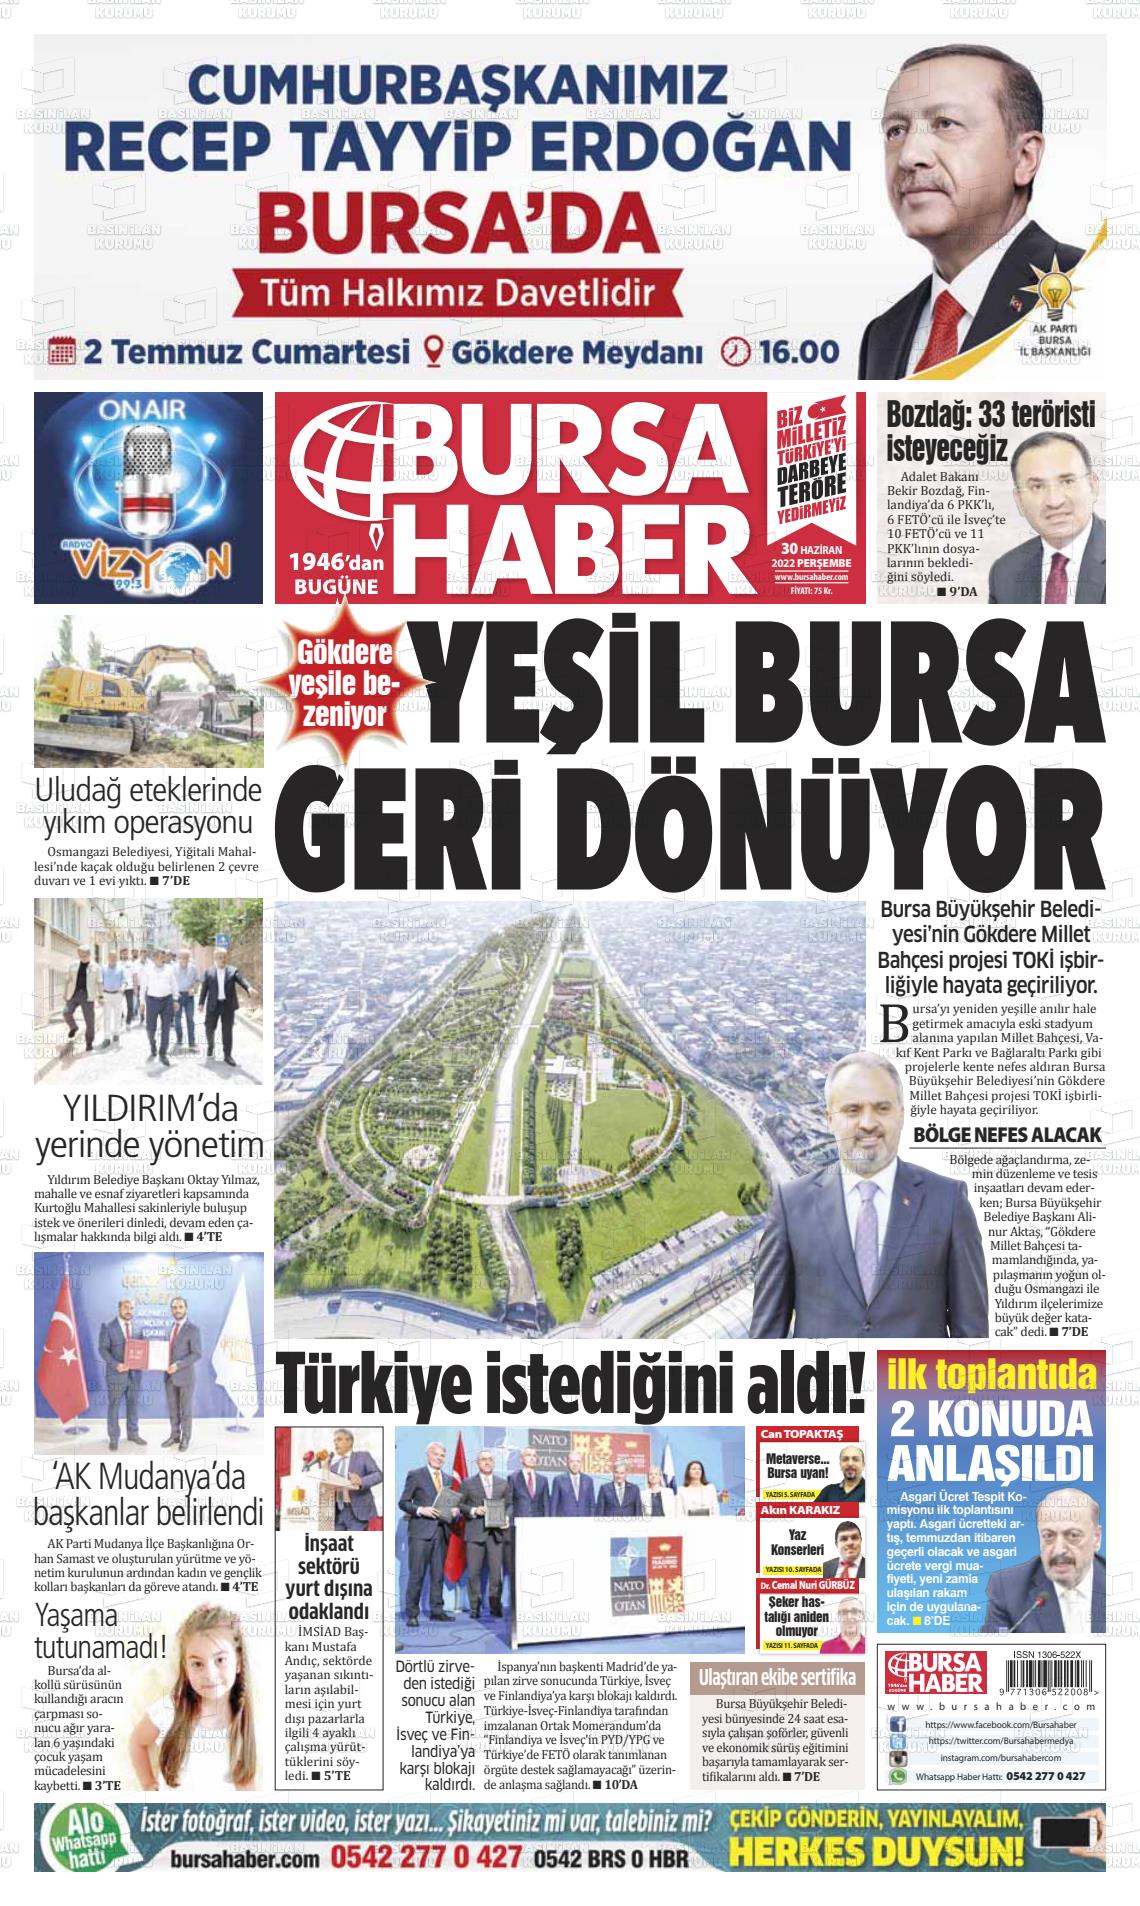 02 Temmuz 2022 Bursa Haber Gazete Manşeti